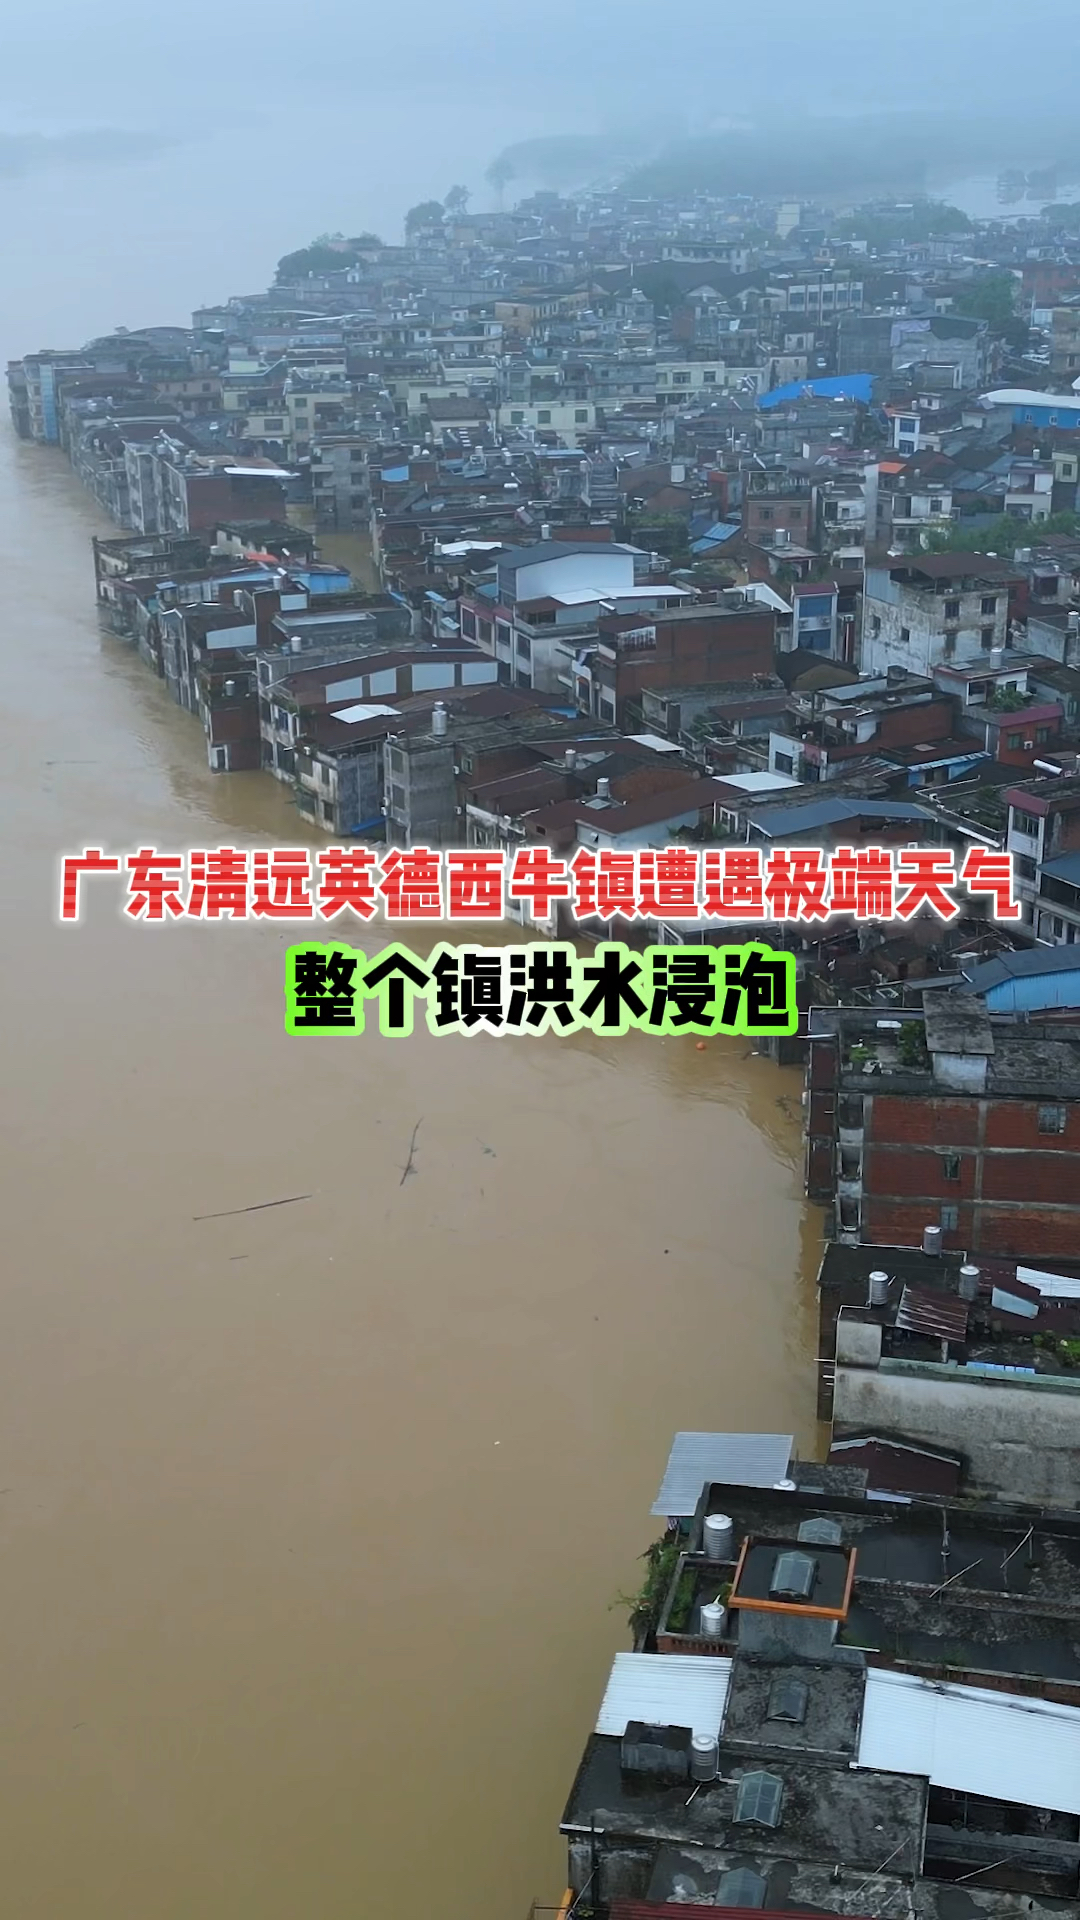 广东清远英德西牛镇遭遇极端天气整个镇被洪水浸泡最终抗下了所有